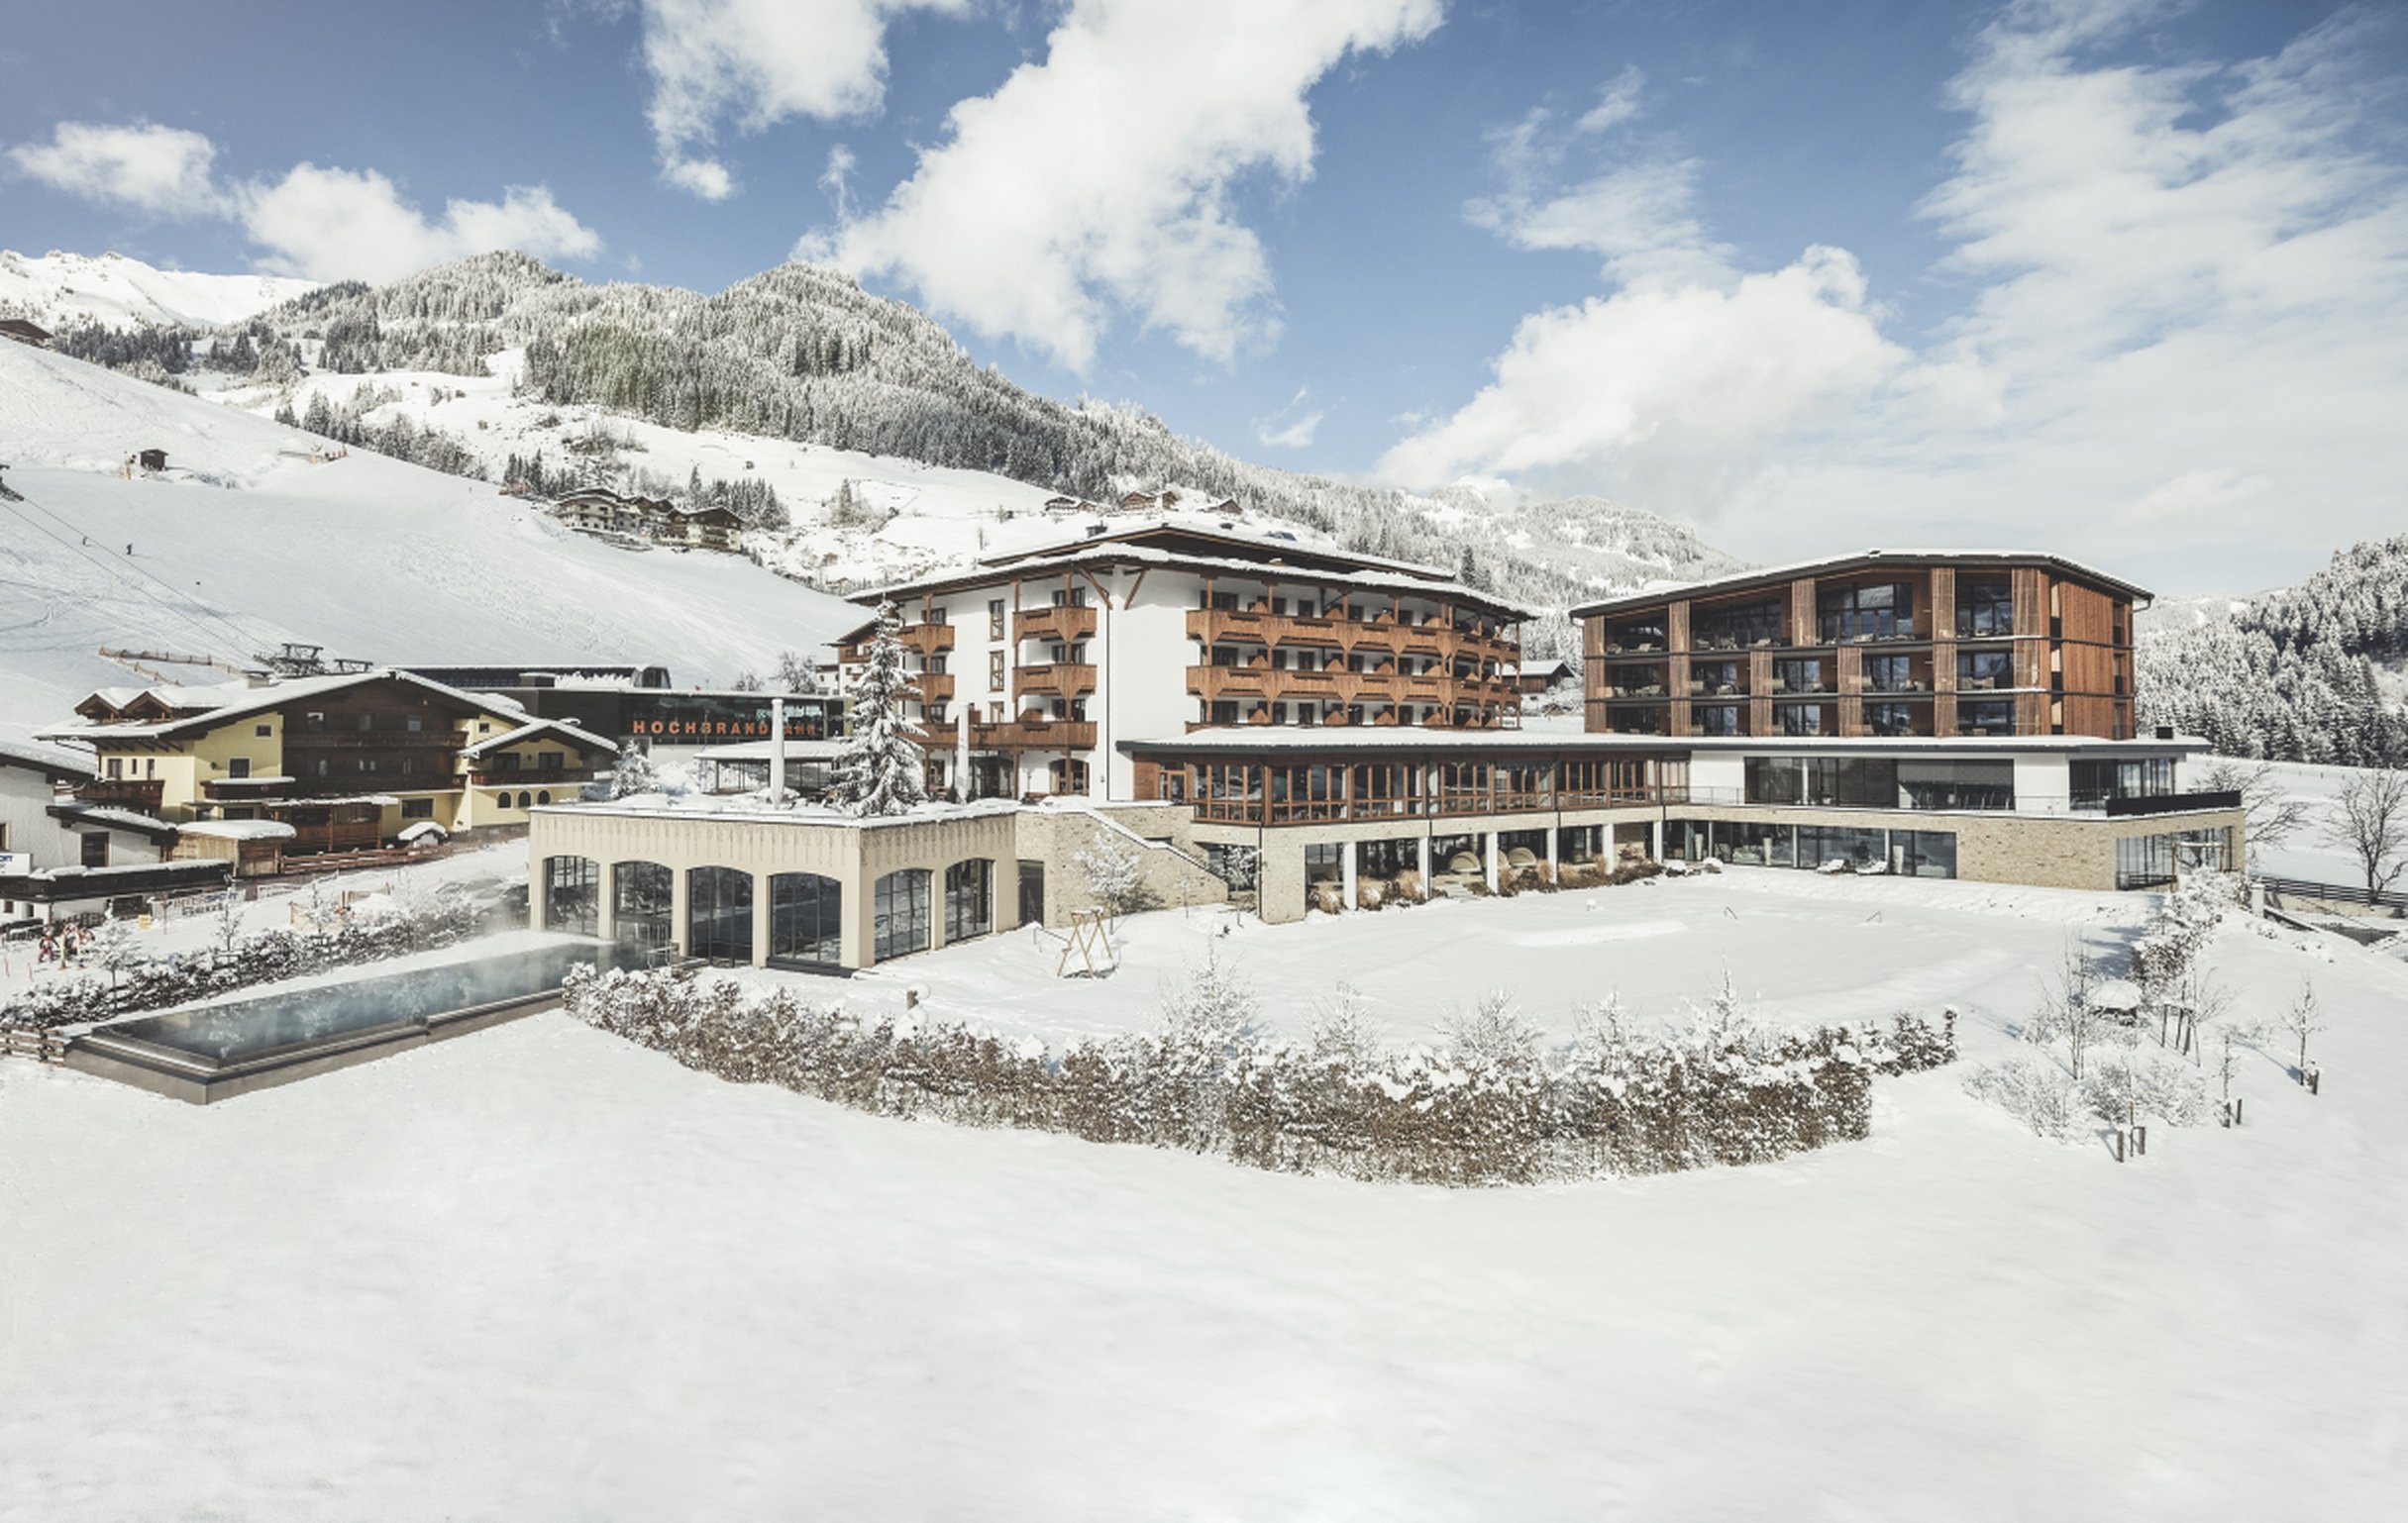 Winterurlaub Wandern & Wellness: Hotel Nesslerhof Großarl, Österreich, wunderschöne Zimmer, Ski in den Bergen, traumhafter Wellnessbereich